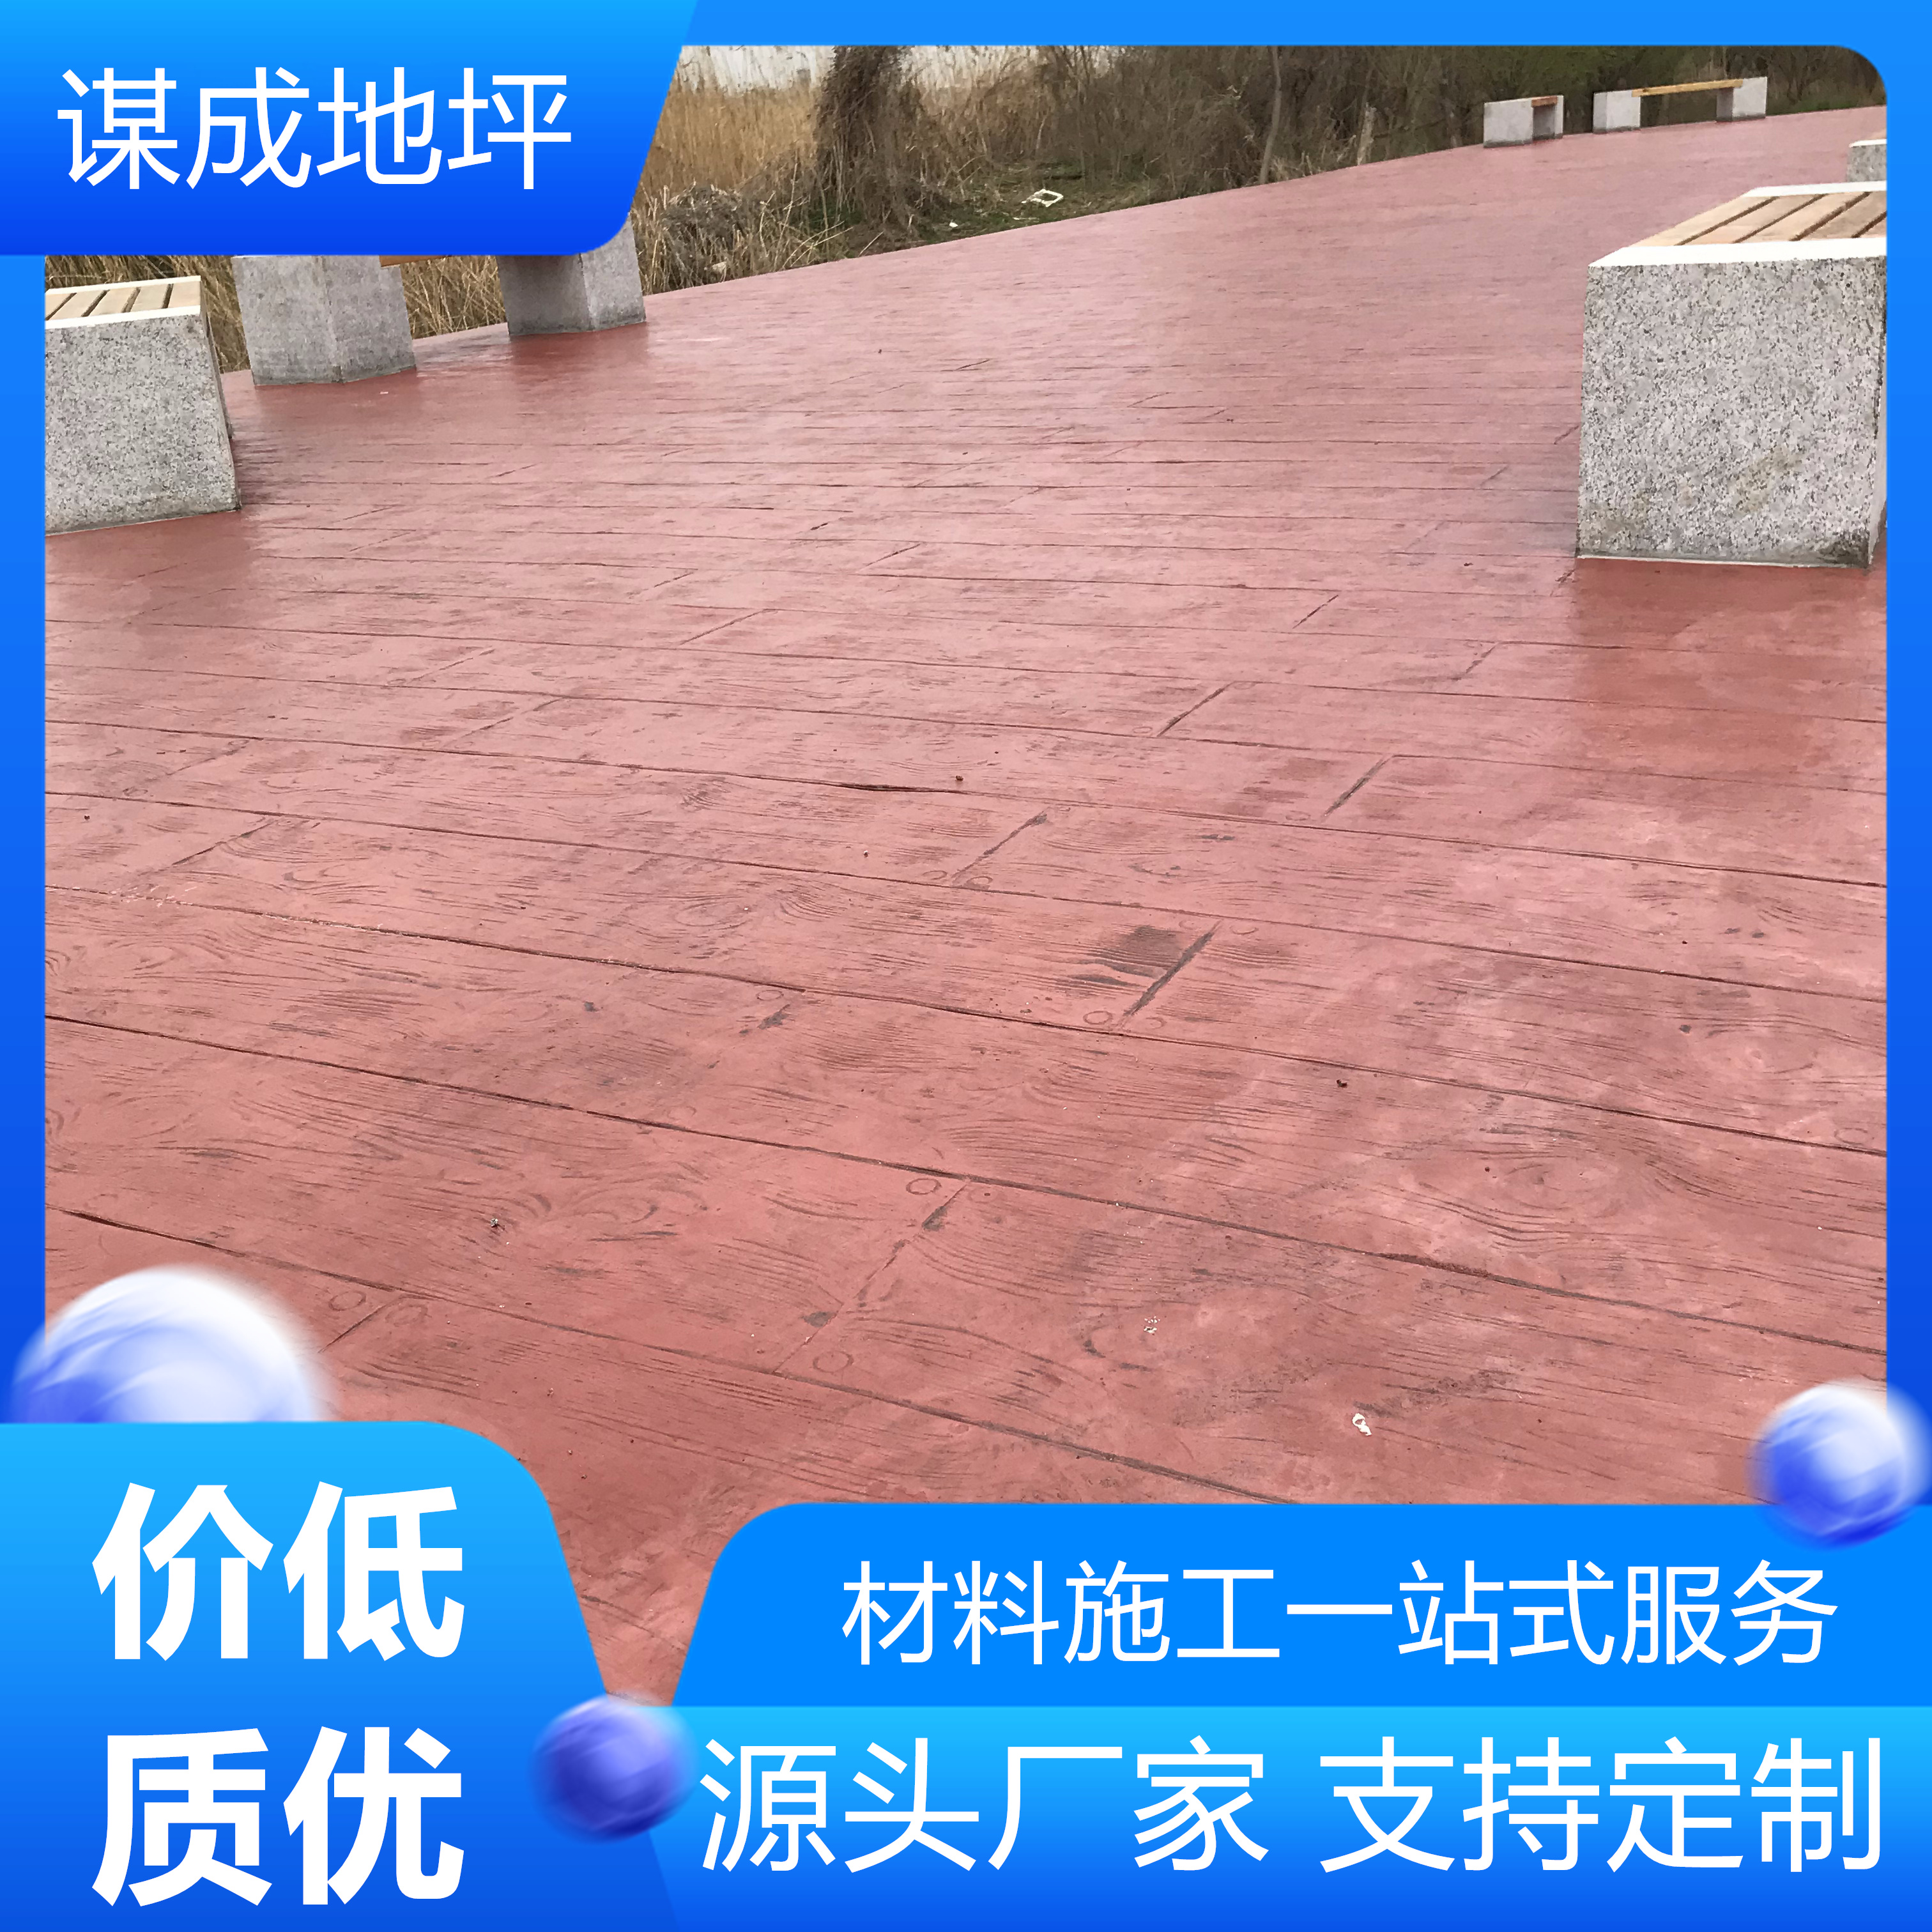 安徽亳州和县水泥混凝土路面艺术地坪-艺术压纹地坪-报价